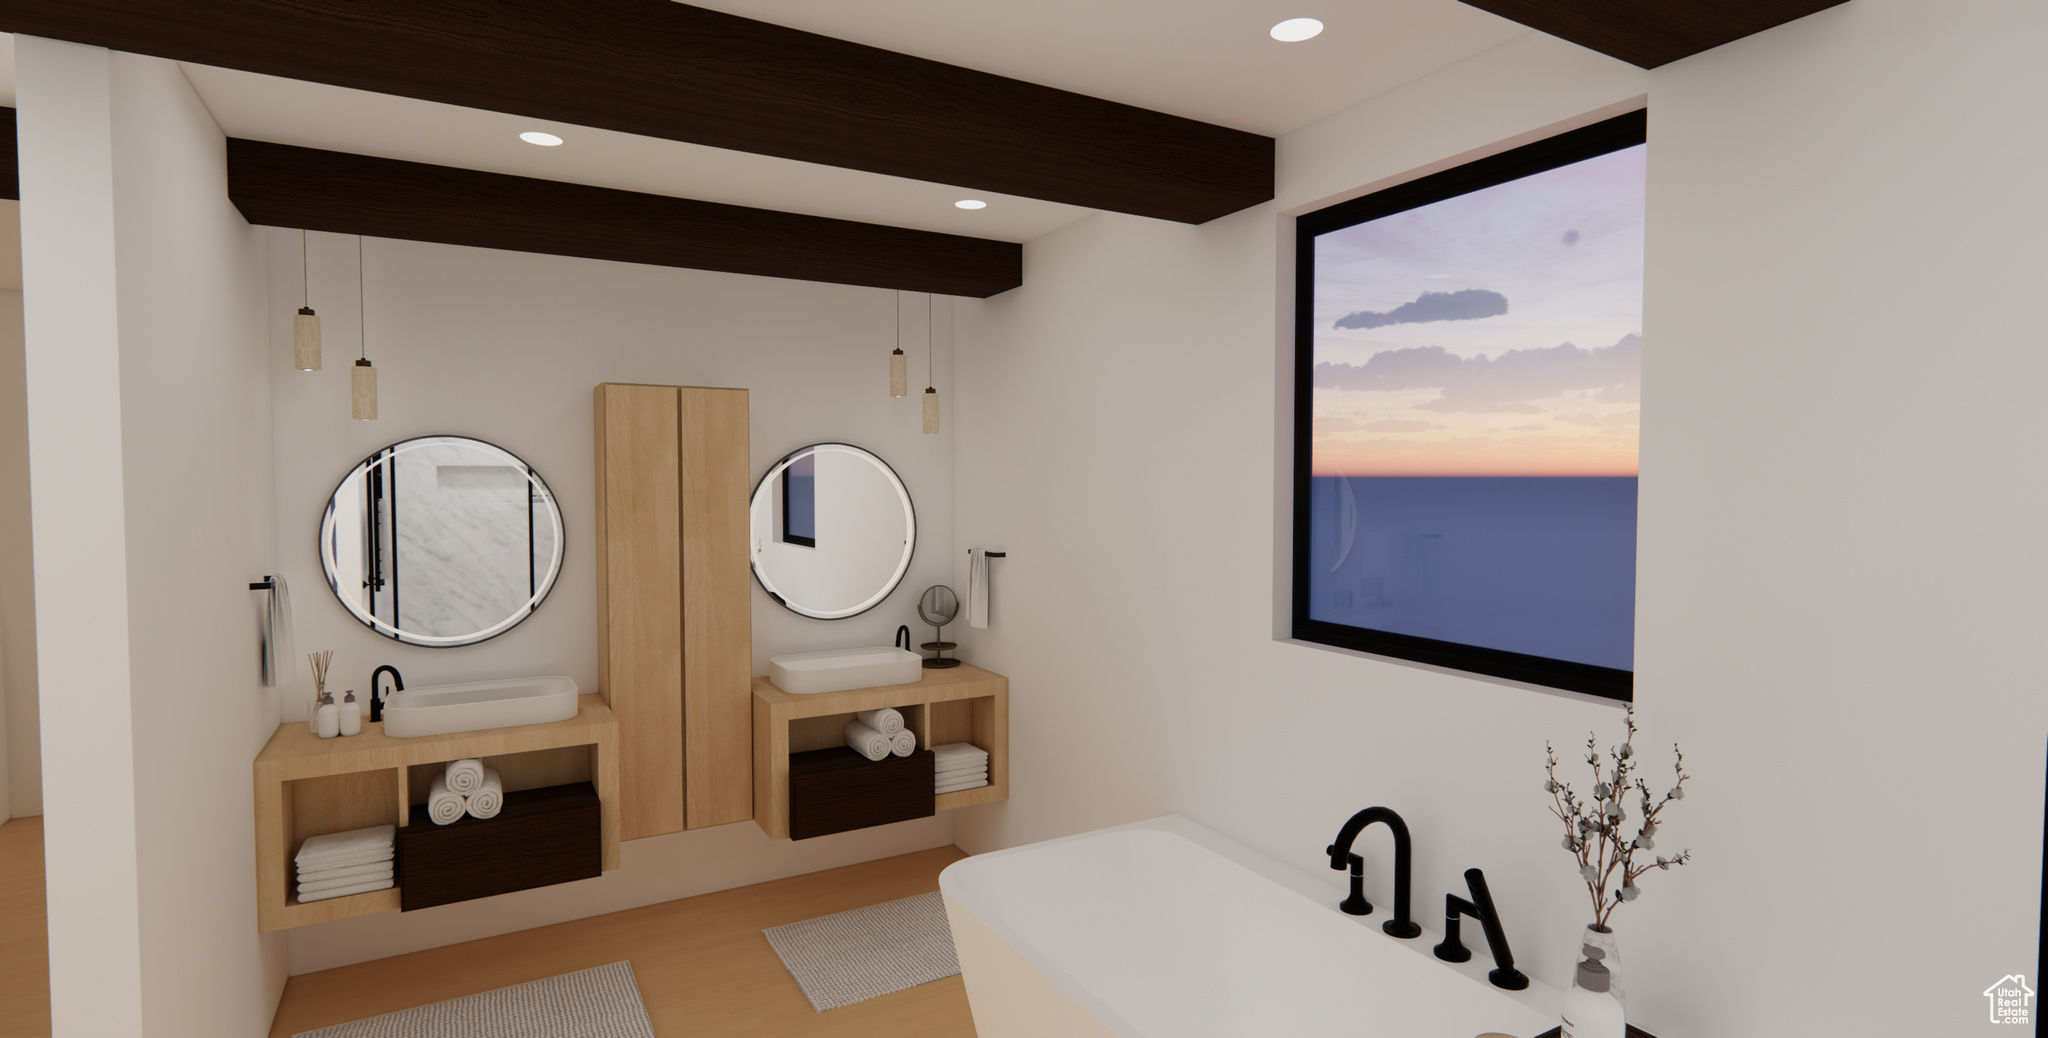 Bathroom featuring a bathing tub, hardwood / wood-style flooring, and dual bowl vanity - RENDERING